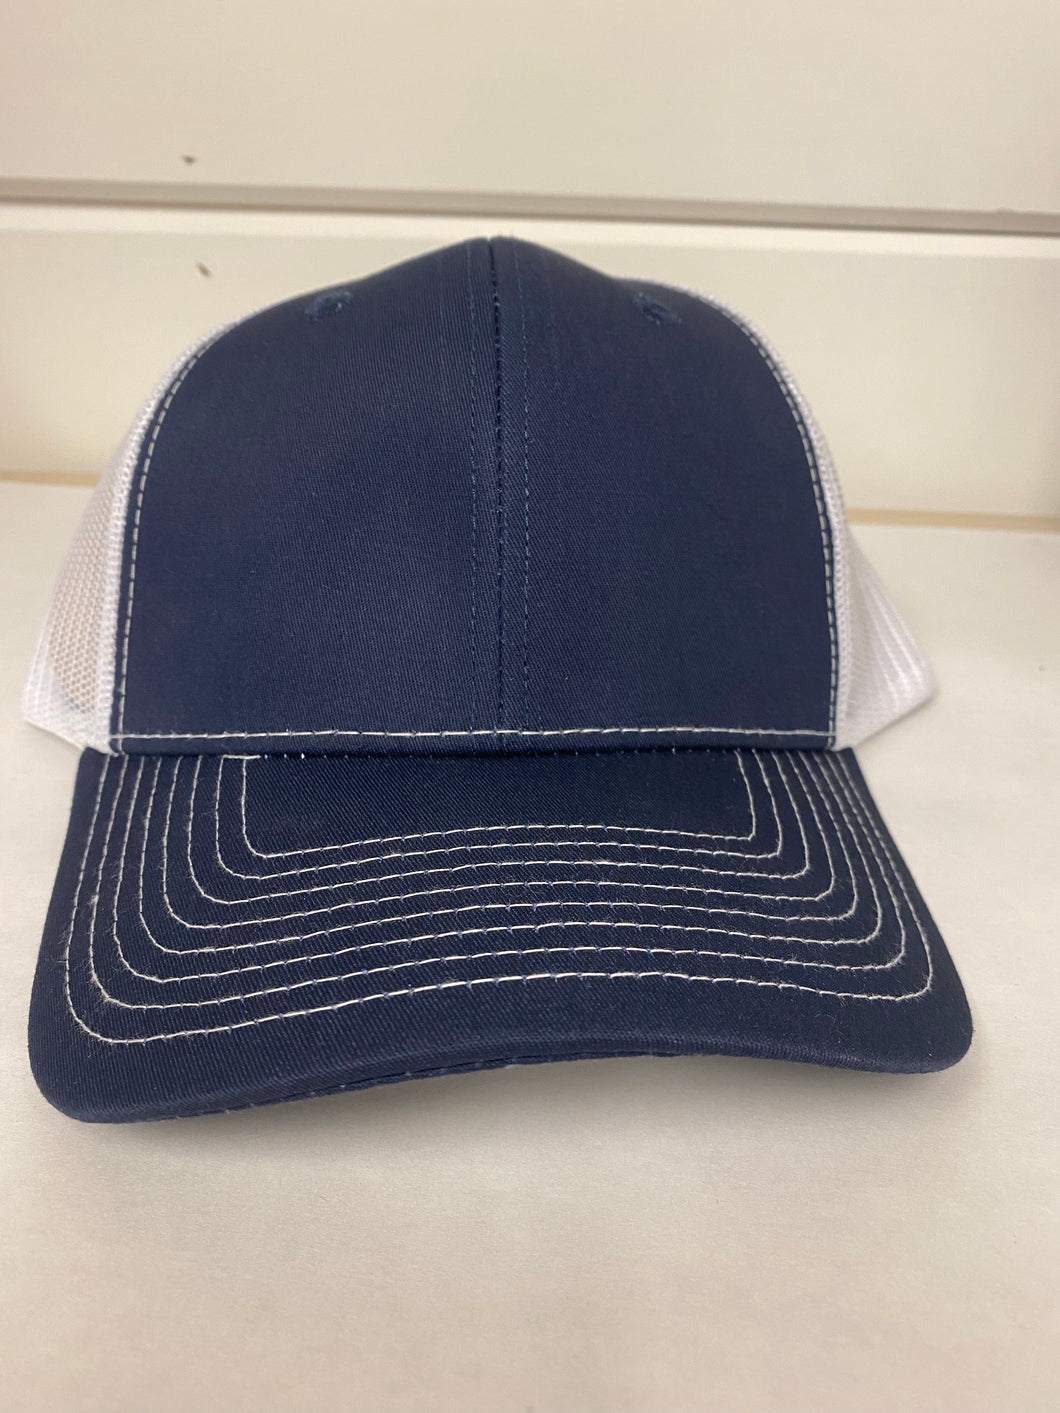 SnapBack Hats Adult (8 colors)